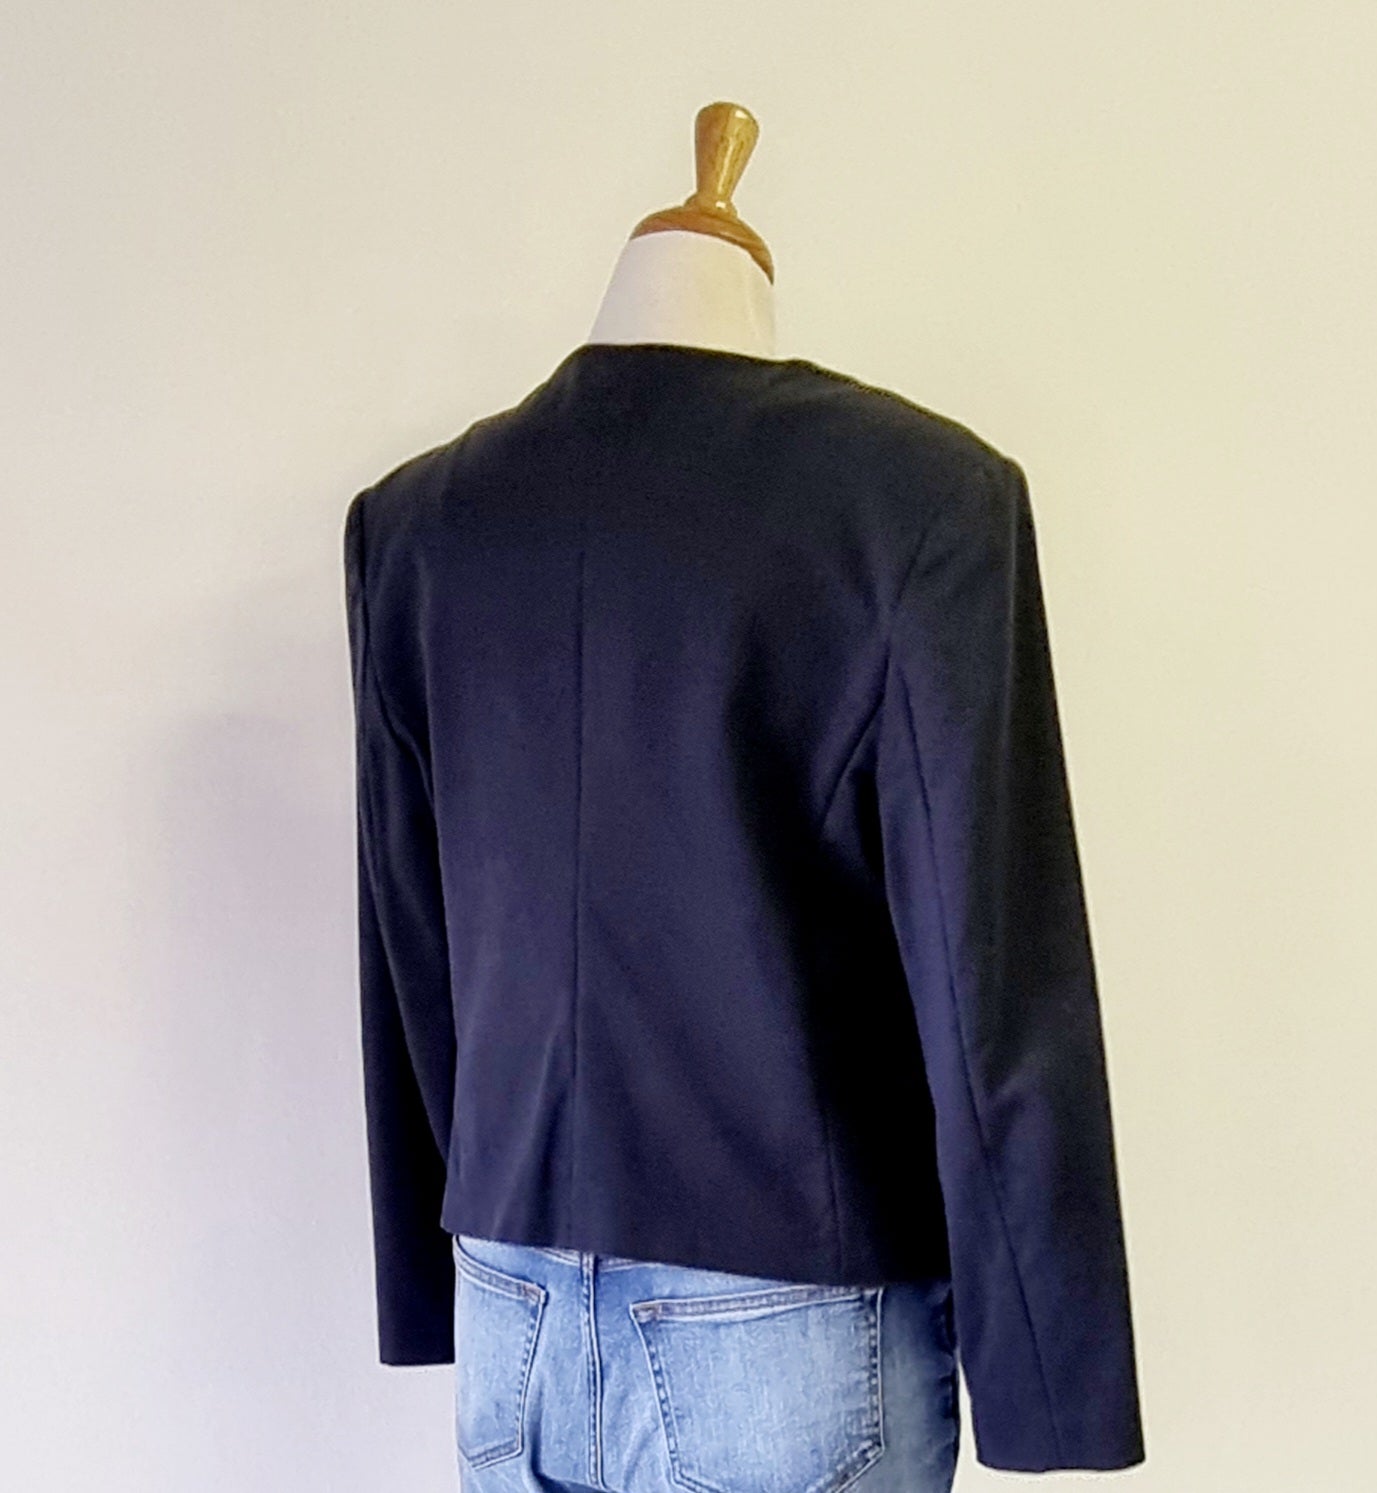 Forever New - Blue blazer with side pocket embellished zips